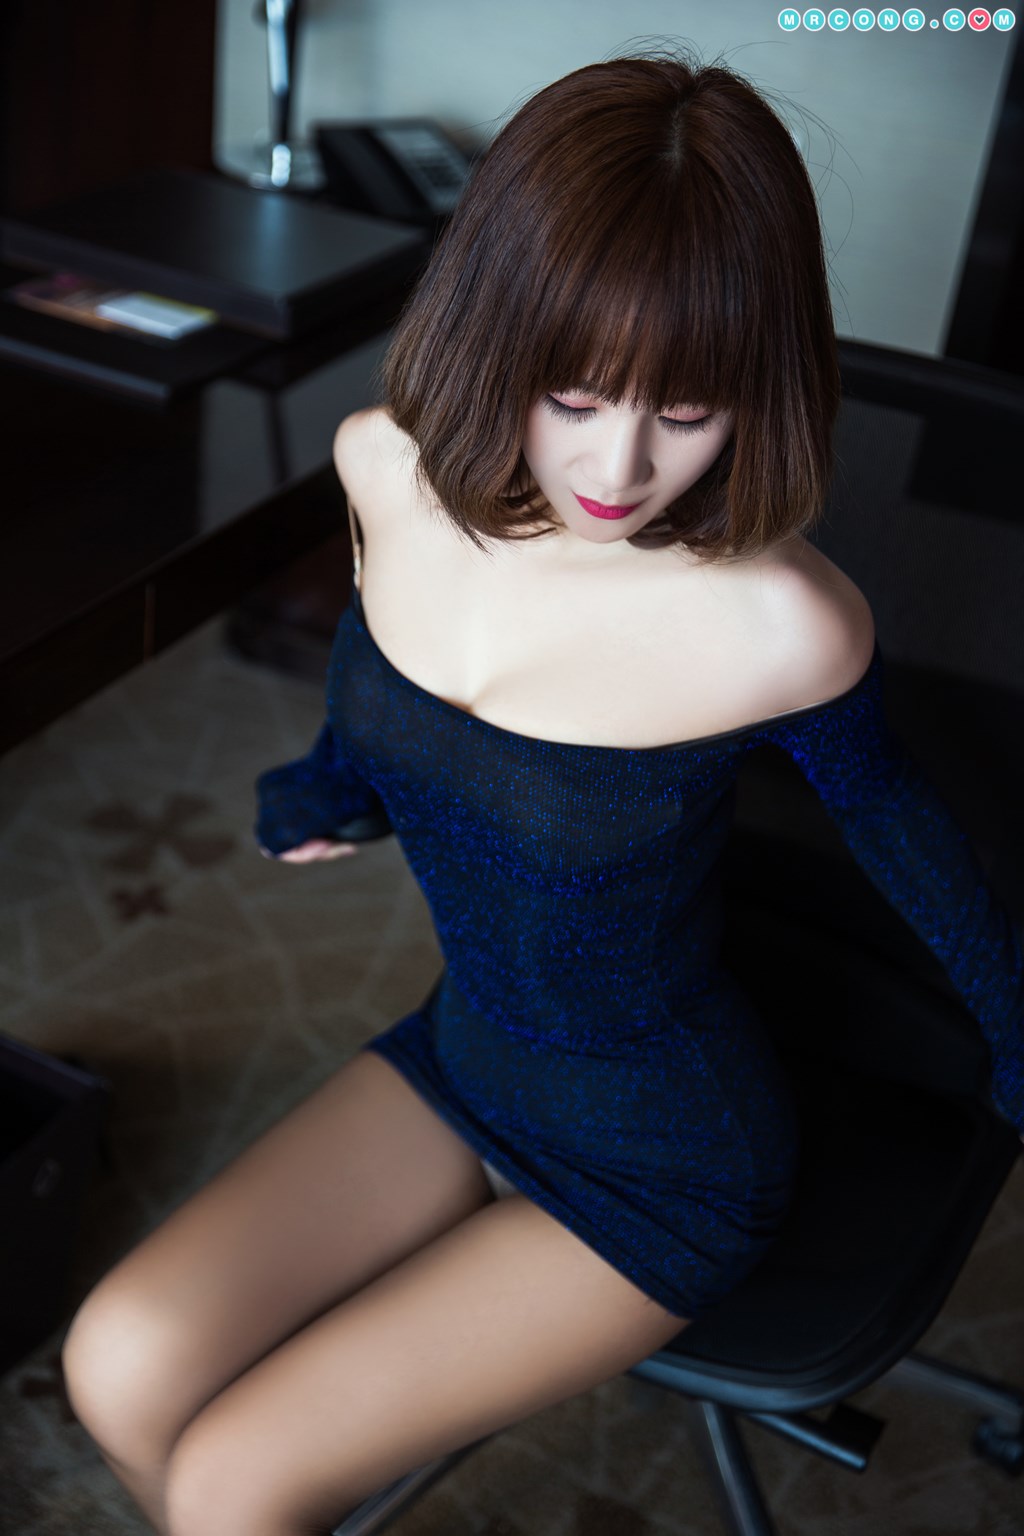 TouTiao 2018-03-23: Model Qian Xue (芊 雪) (21 photos) photo 1-10